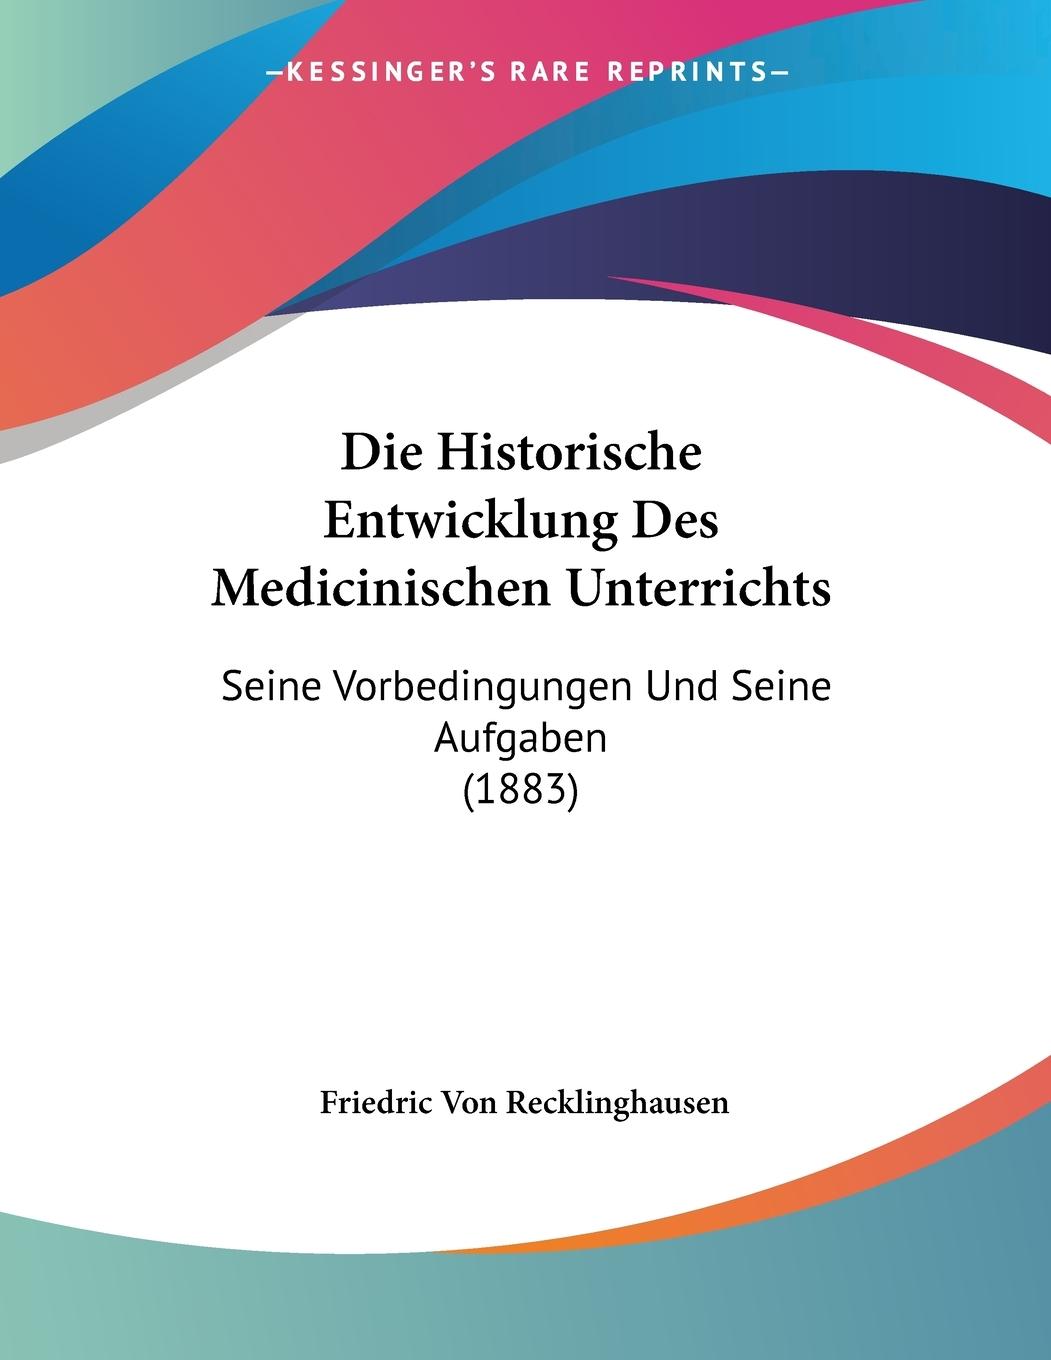 Die Historische Entwicklung Des Medicinischen Unterrichts - Recklinghausen, Friedric Von